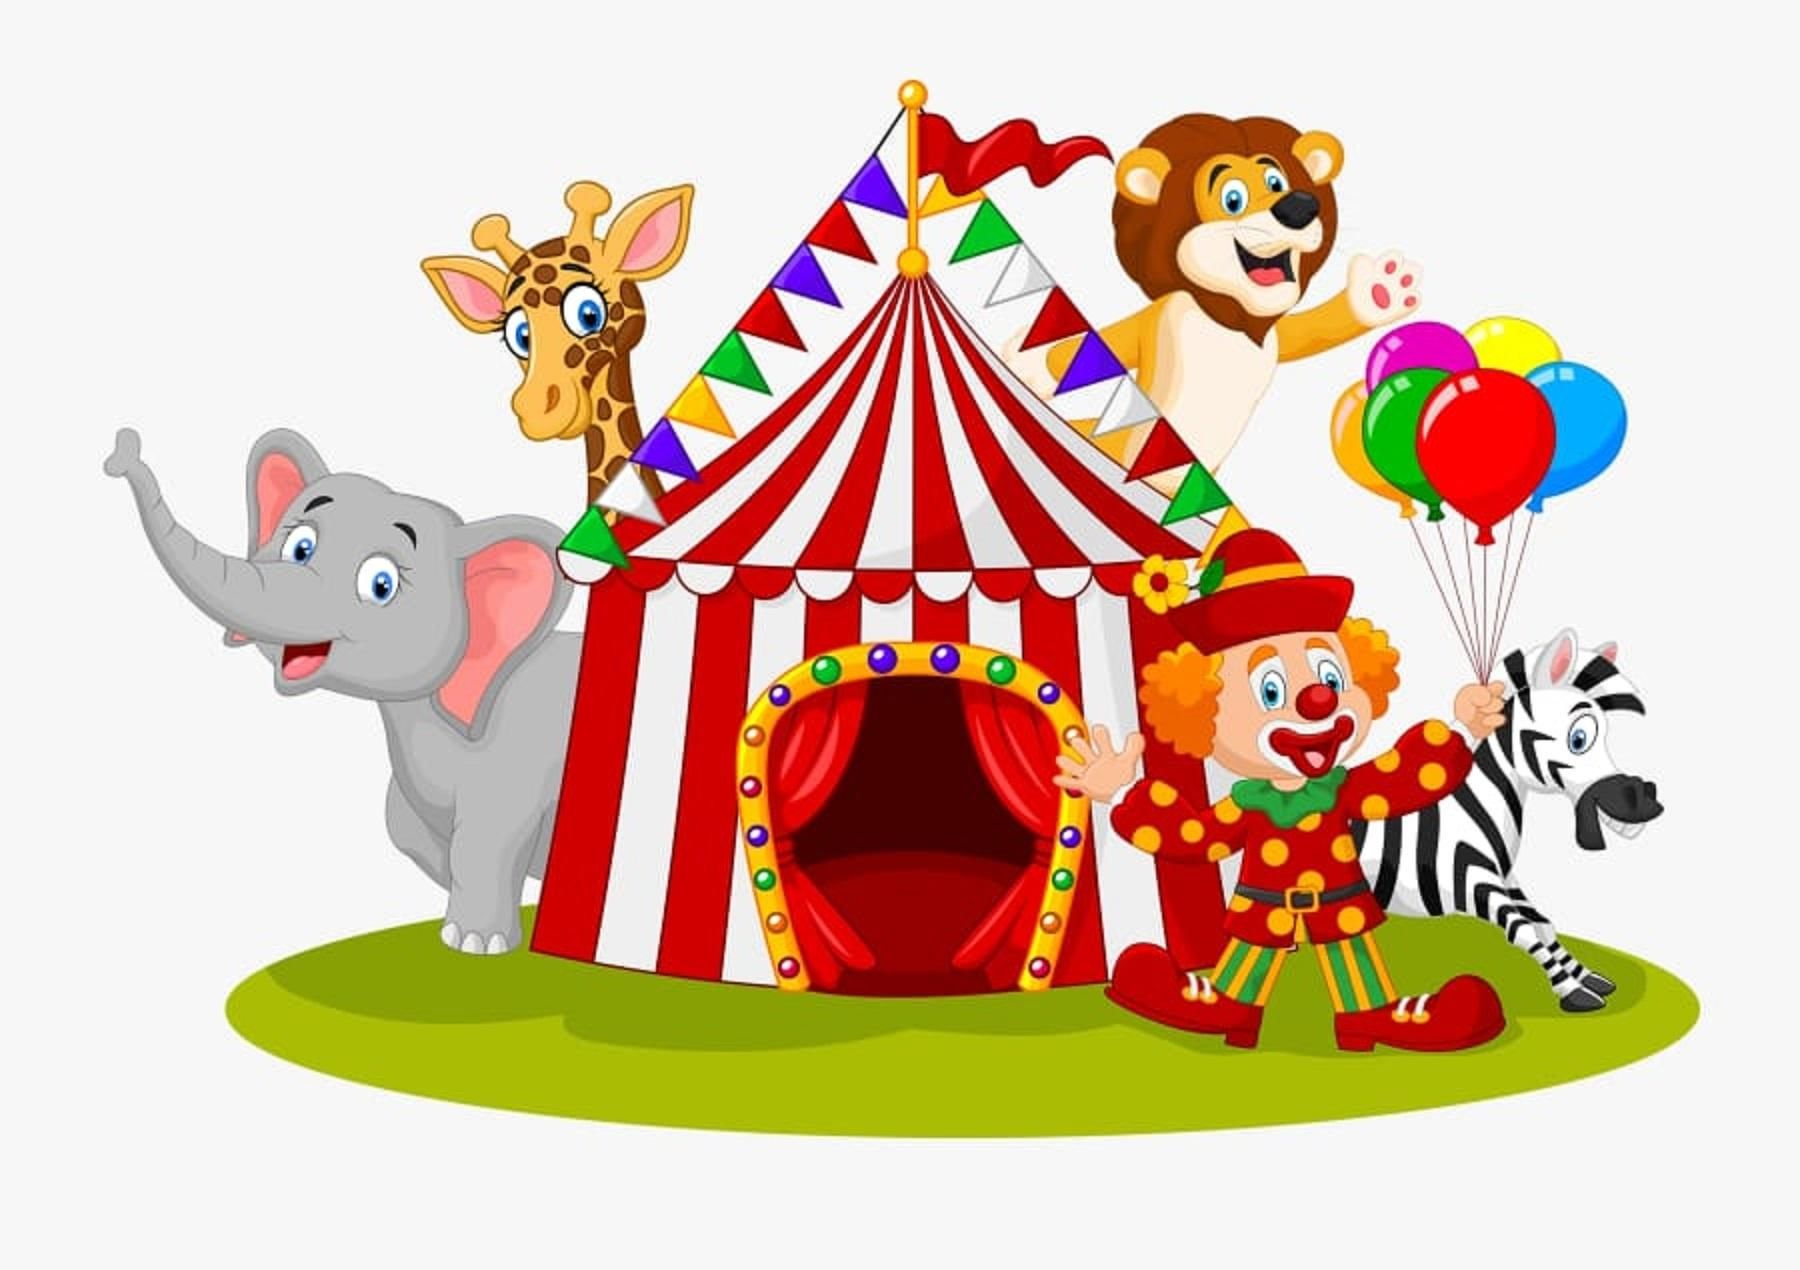 Детский рисунок цирк